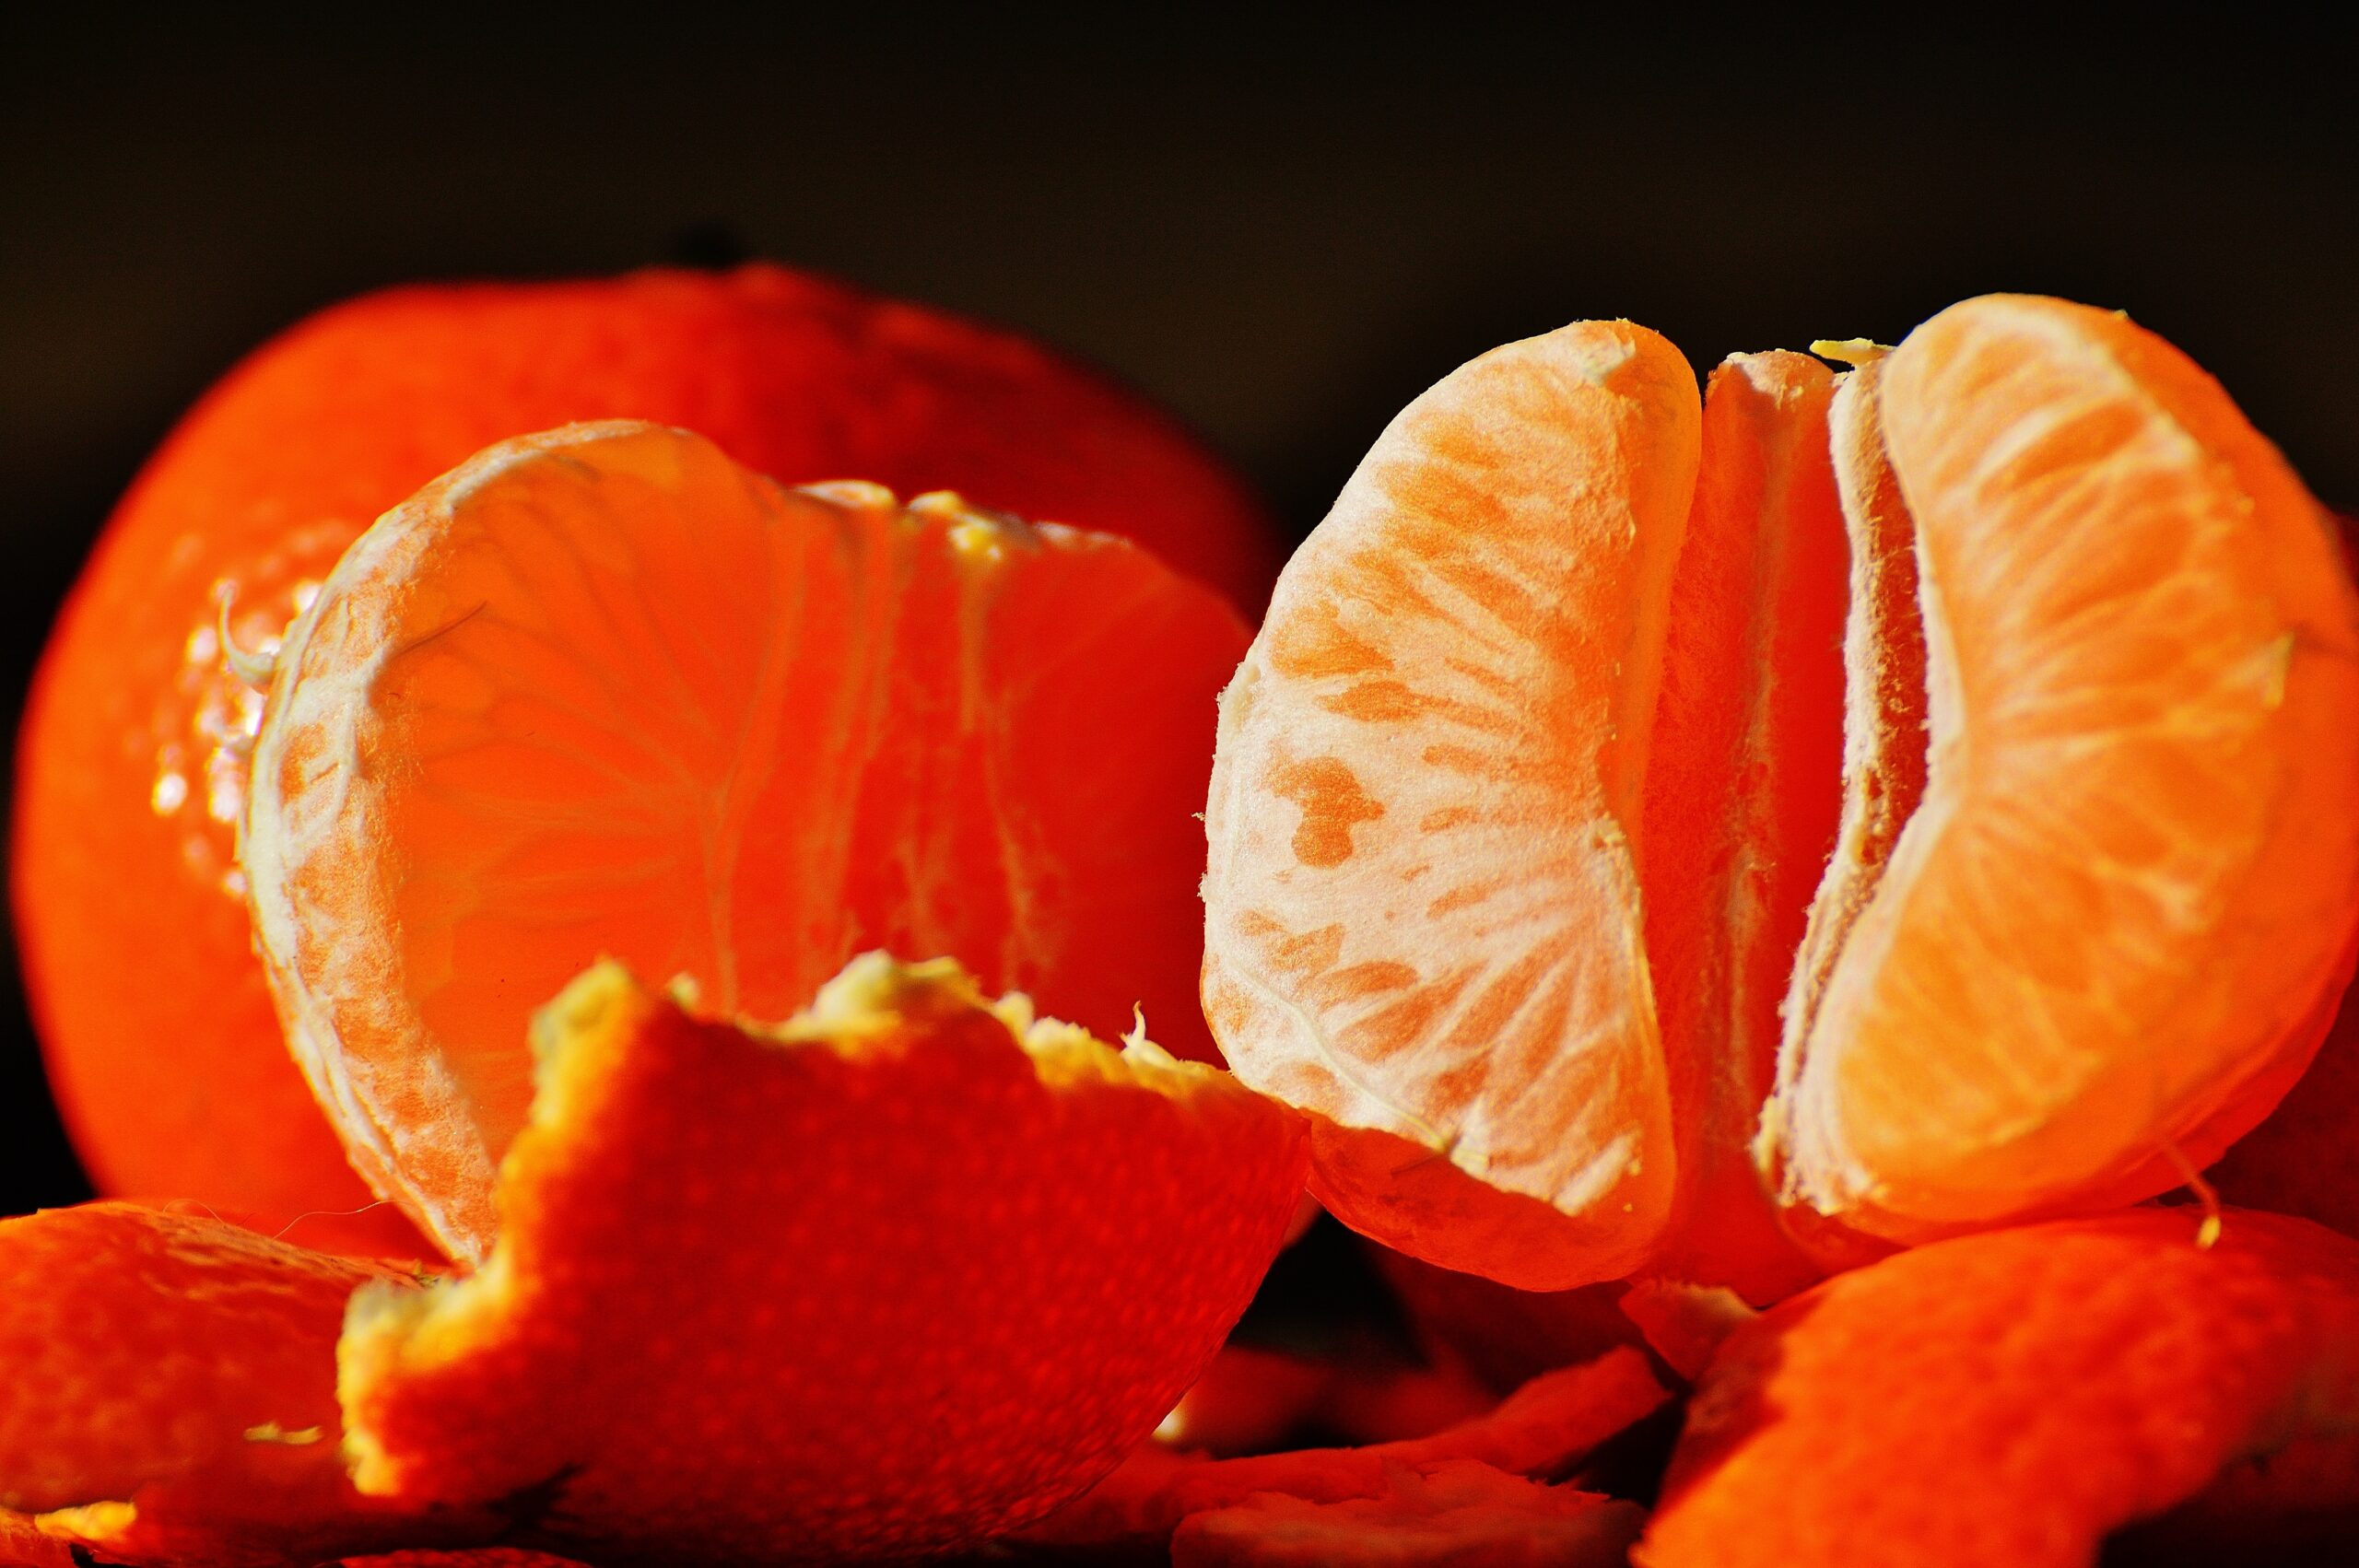 Эксперты предупредили: Цены на мандарины могут ударить по кошельку к Новому году